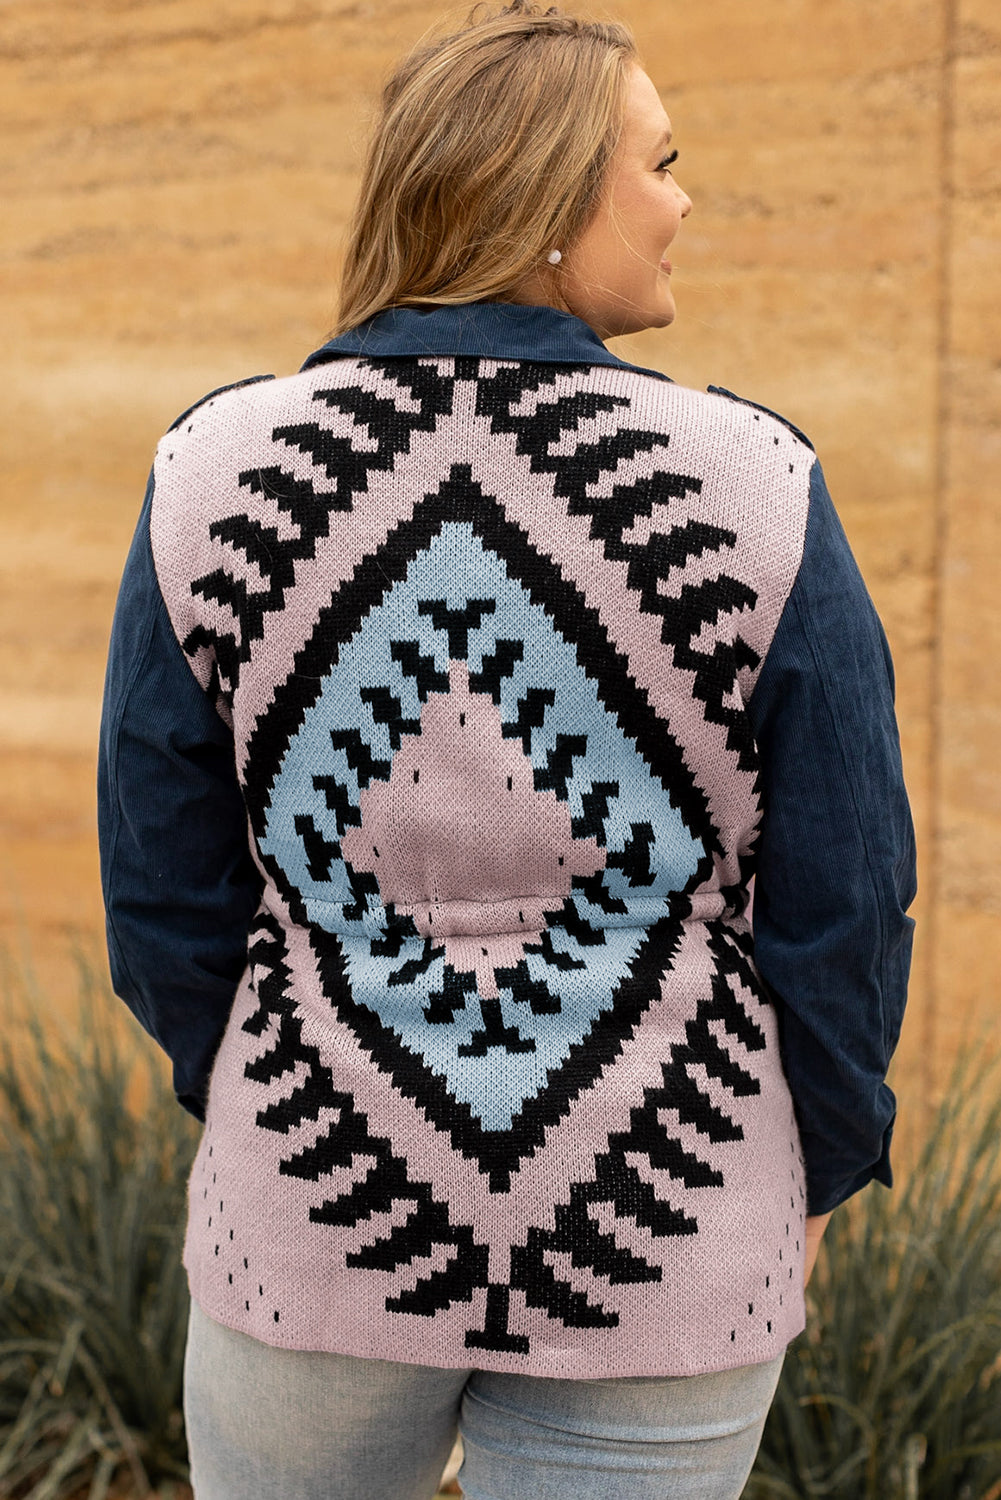 Blaue Jacke aus Cord-Jacquard-Strick in Übergröße mit aztekischem Rücken